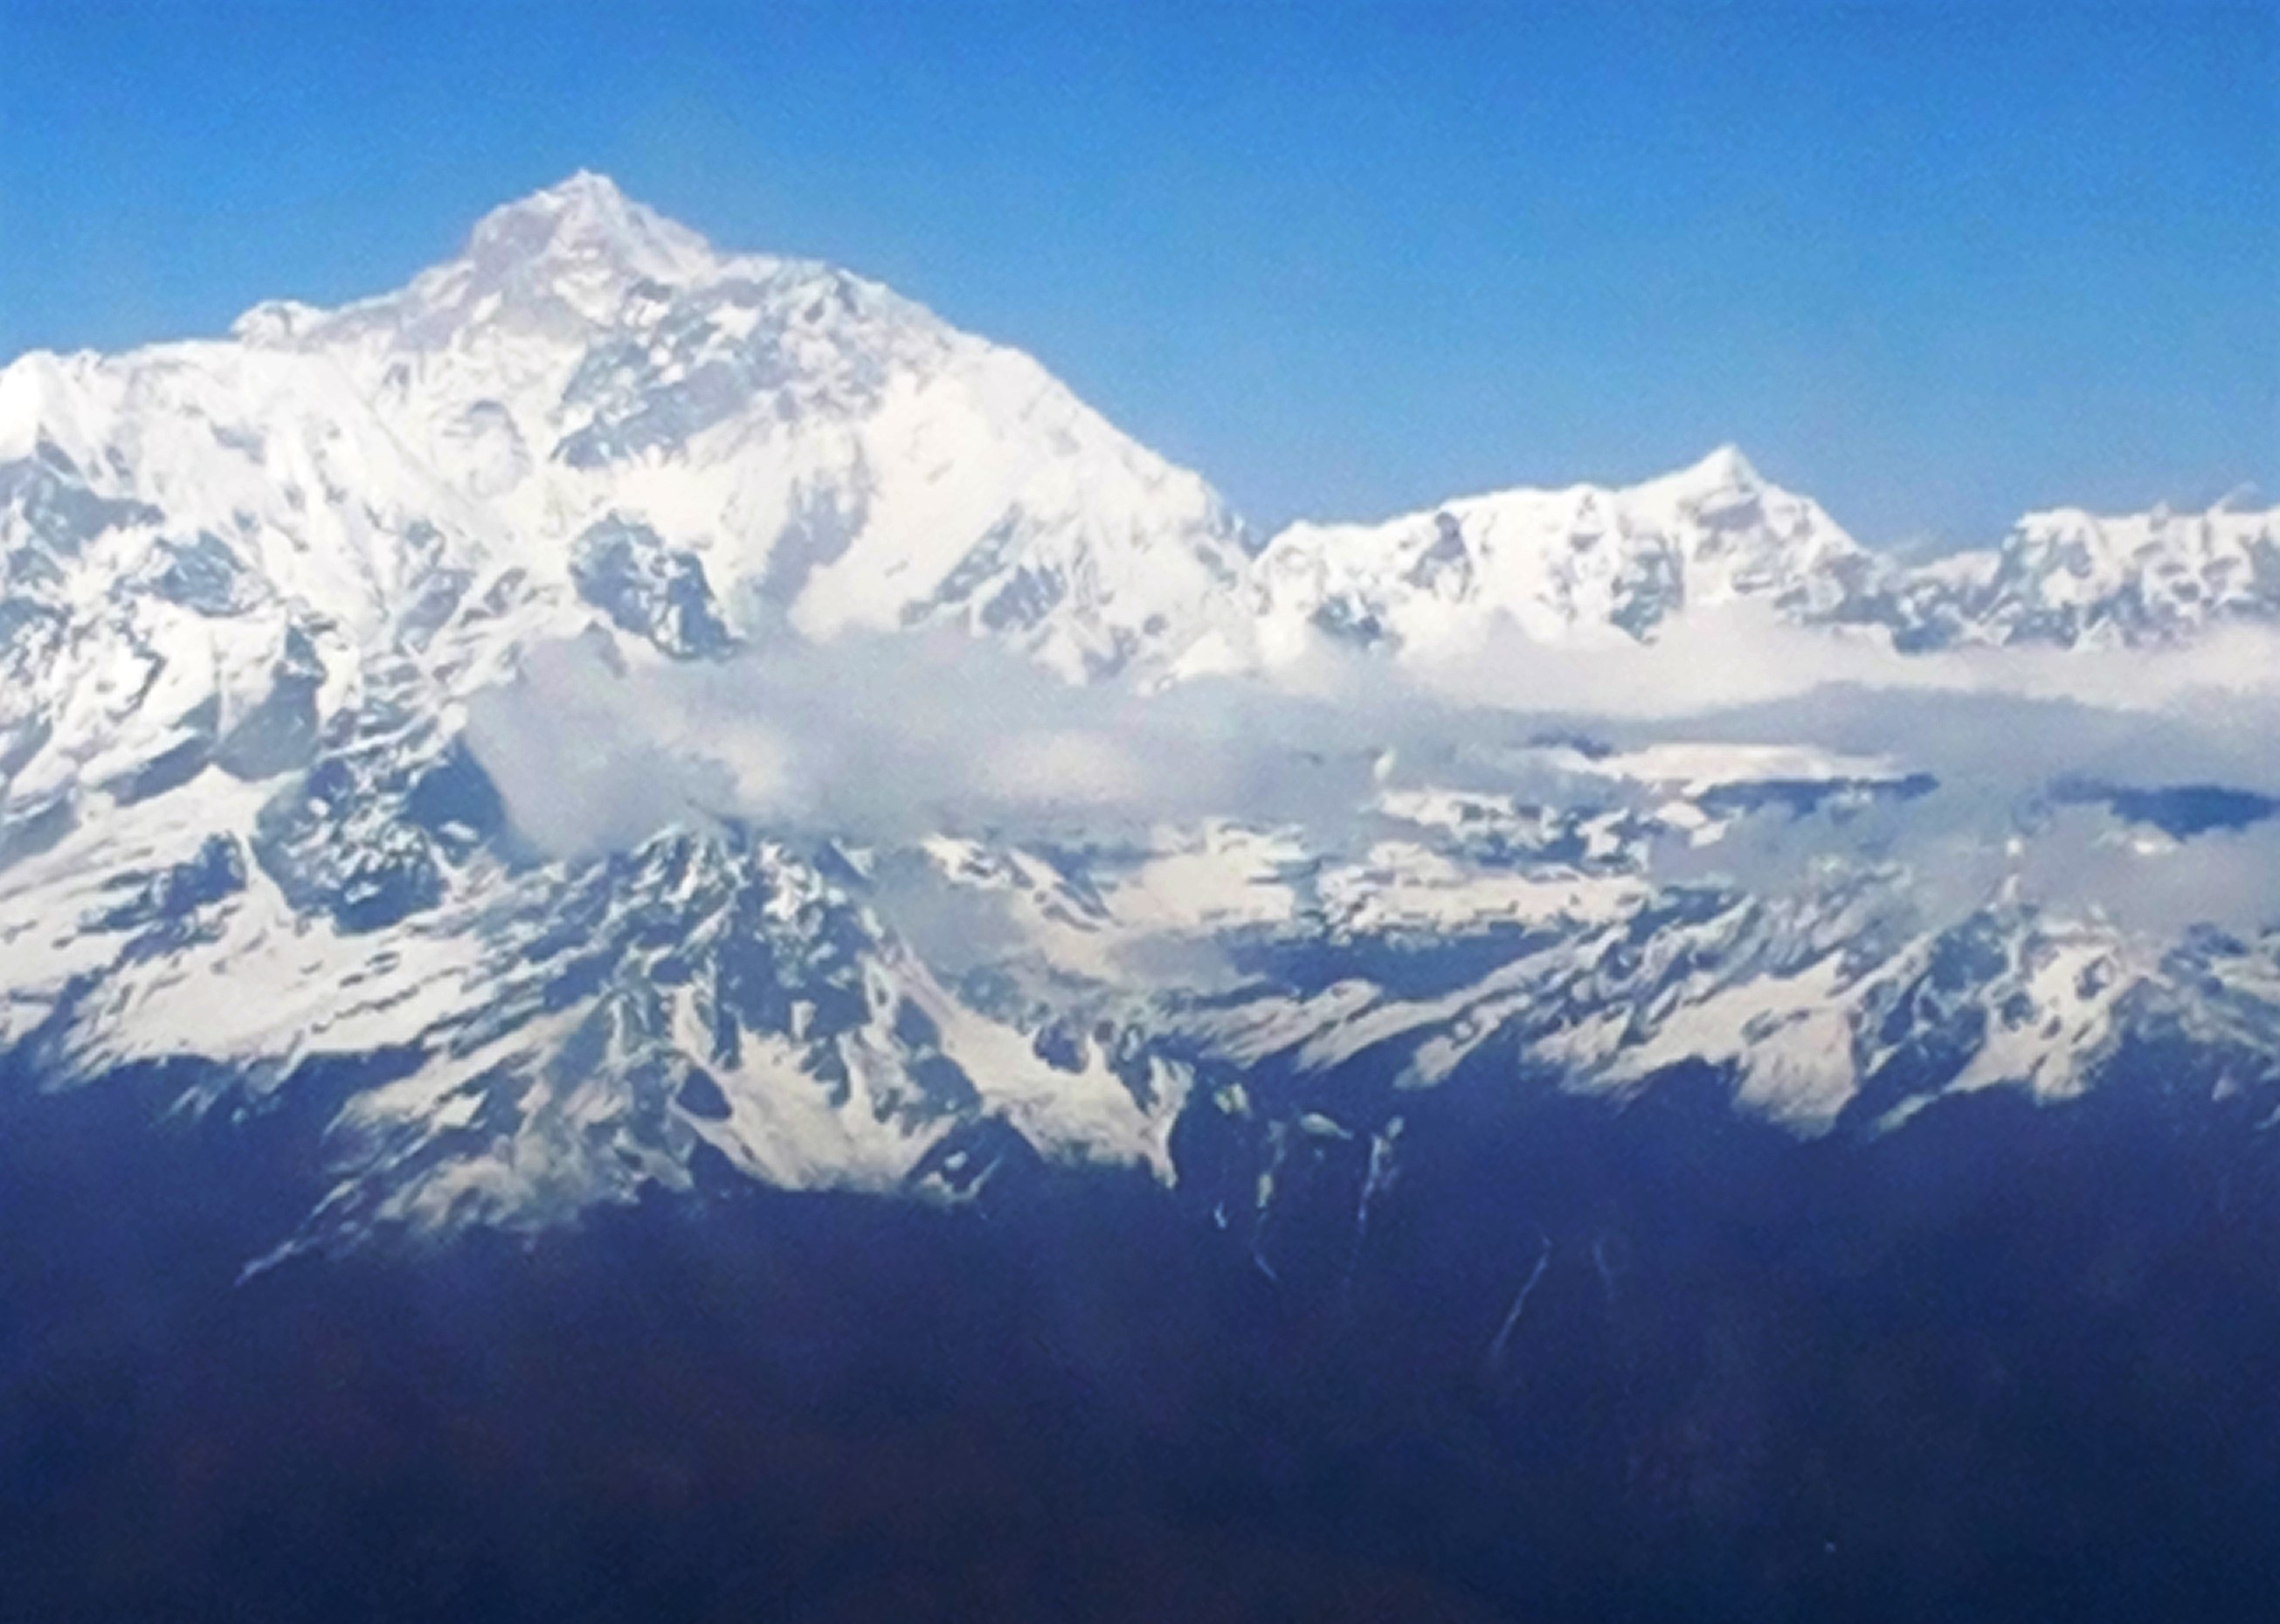 (Vista do avião para o Monte Everest. Foto: Ana Arantes)